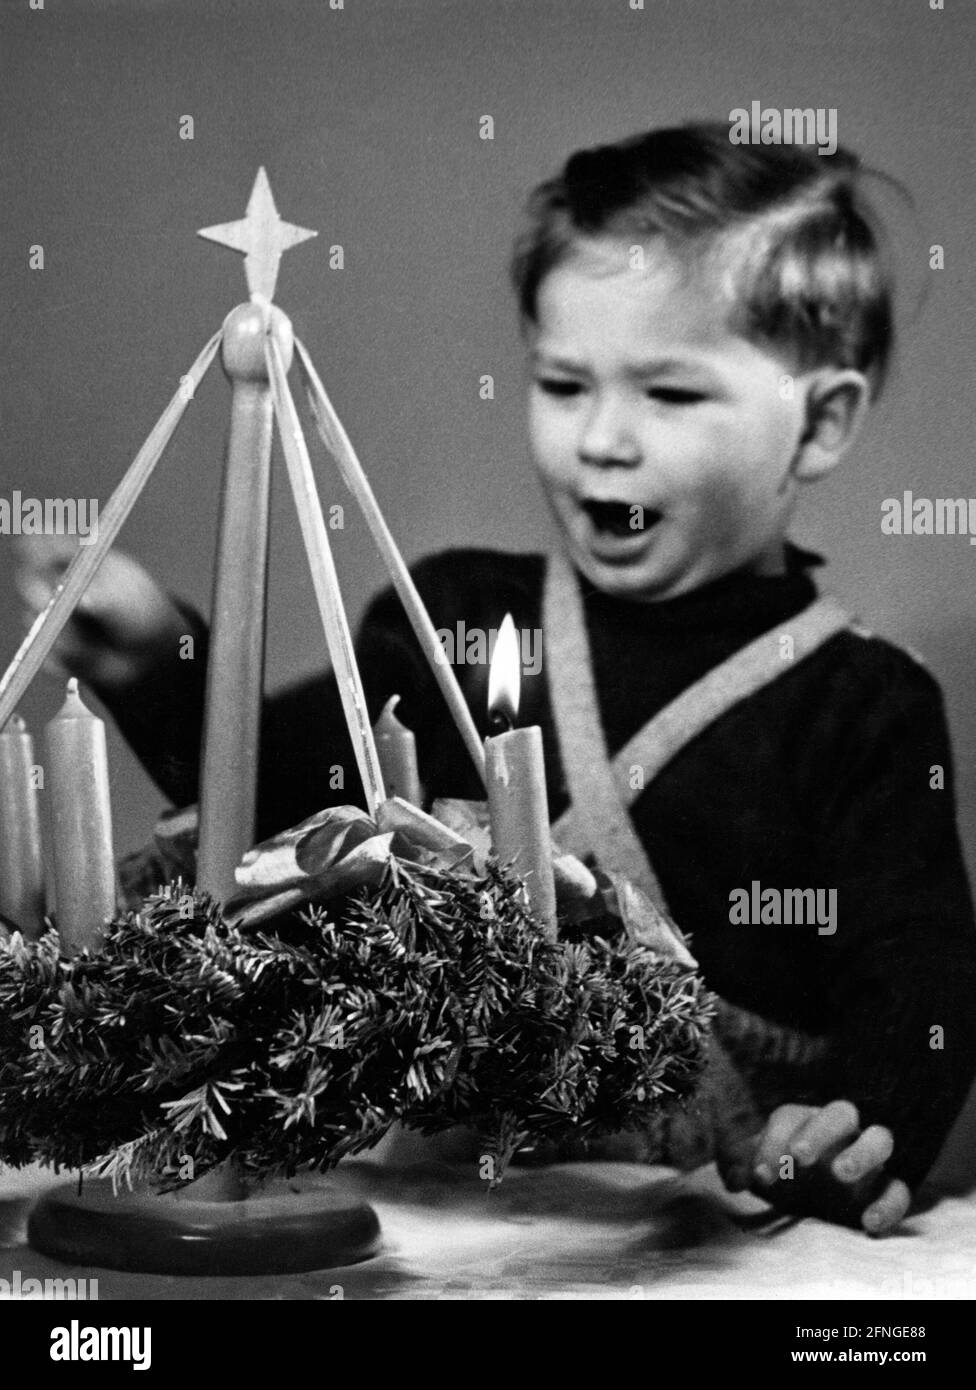 Ein kleiner Junge blickt begeistert auf einen Adventskranz, 40er Jahre [maschinelle Übersetzung] Stockfoto